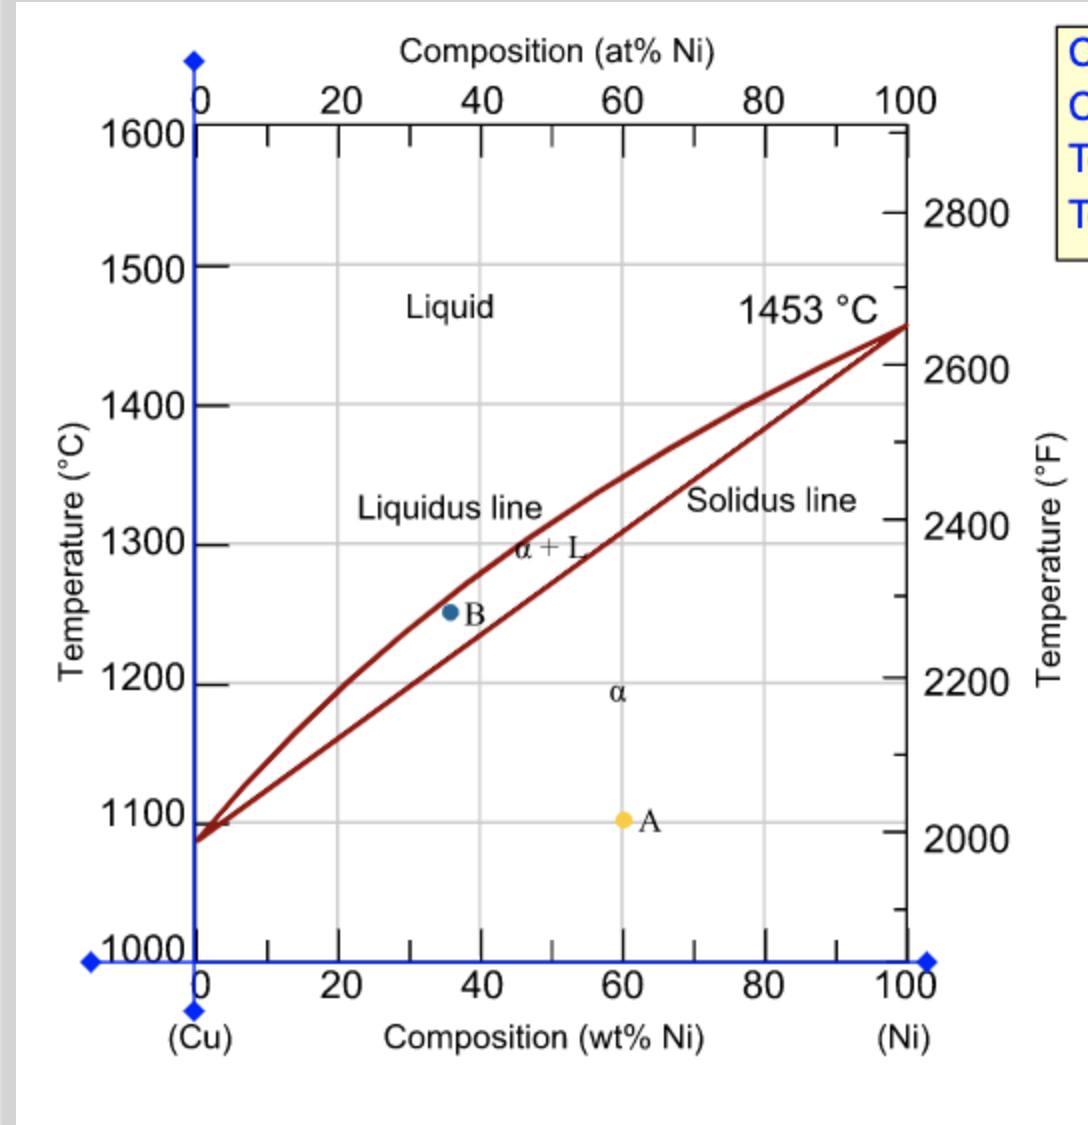 Composition (at% Ni)
20
40
60
80
100
1600
2800
1500
Liquid
1453 °C
2600
1400
Liquidus line
Solidus line
2400
1300
OB
1200
2200
1100
A
2000
1000.
20
40
60
80
100
(Ču)
Composition (wt% Ni)
(Ni)
Temperature (°C)
Temperature (°F)
